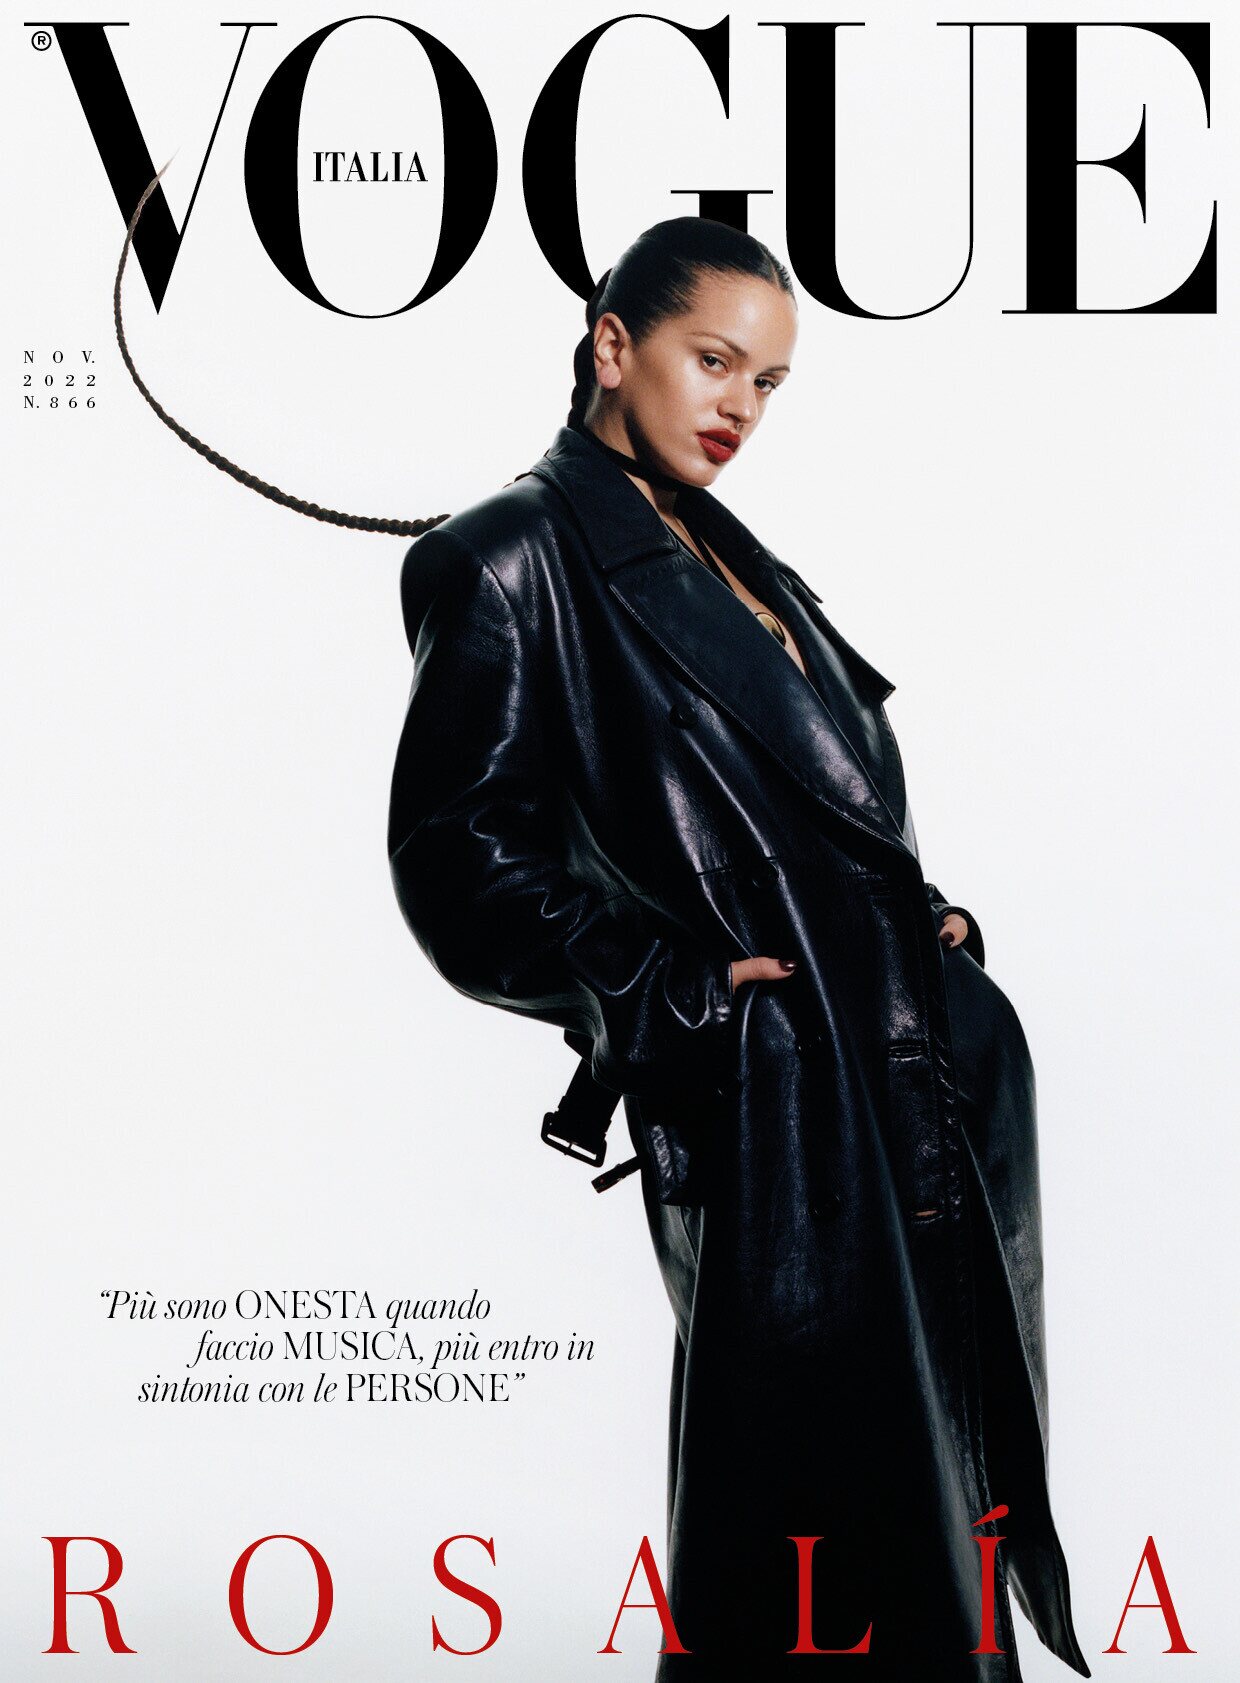 Rosalía protagoniza la portada de Vogue Italia en edición de noviembre 2022